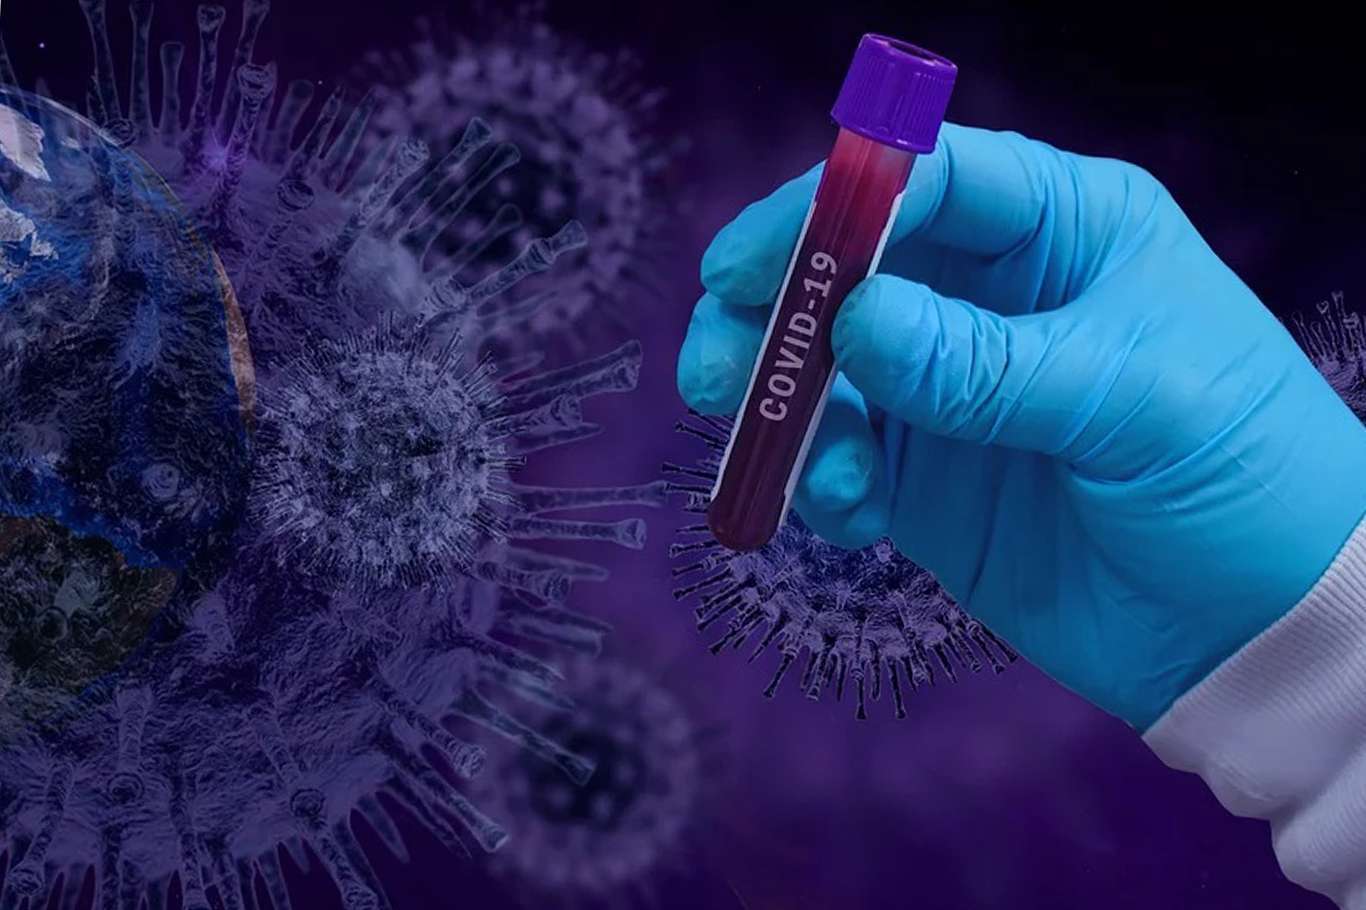 78 more people die from coronavirus in Turkey